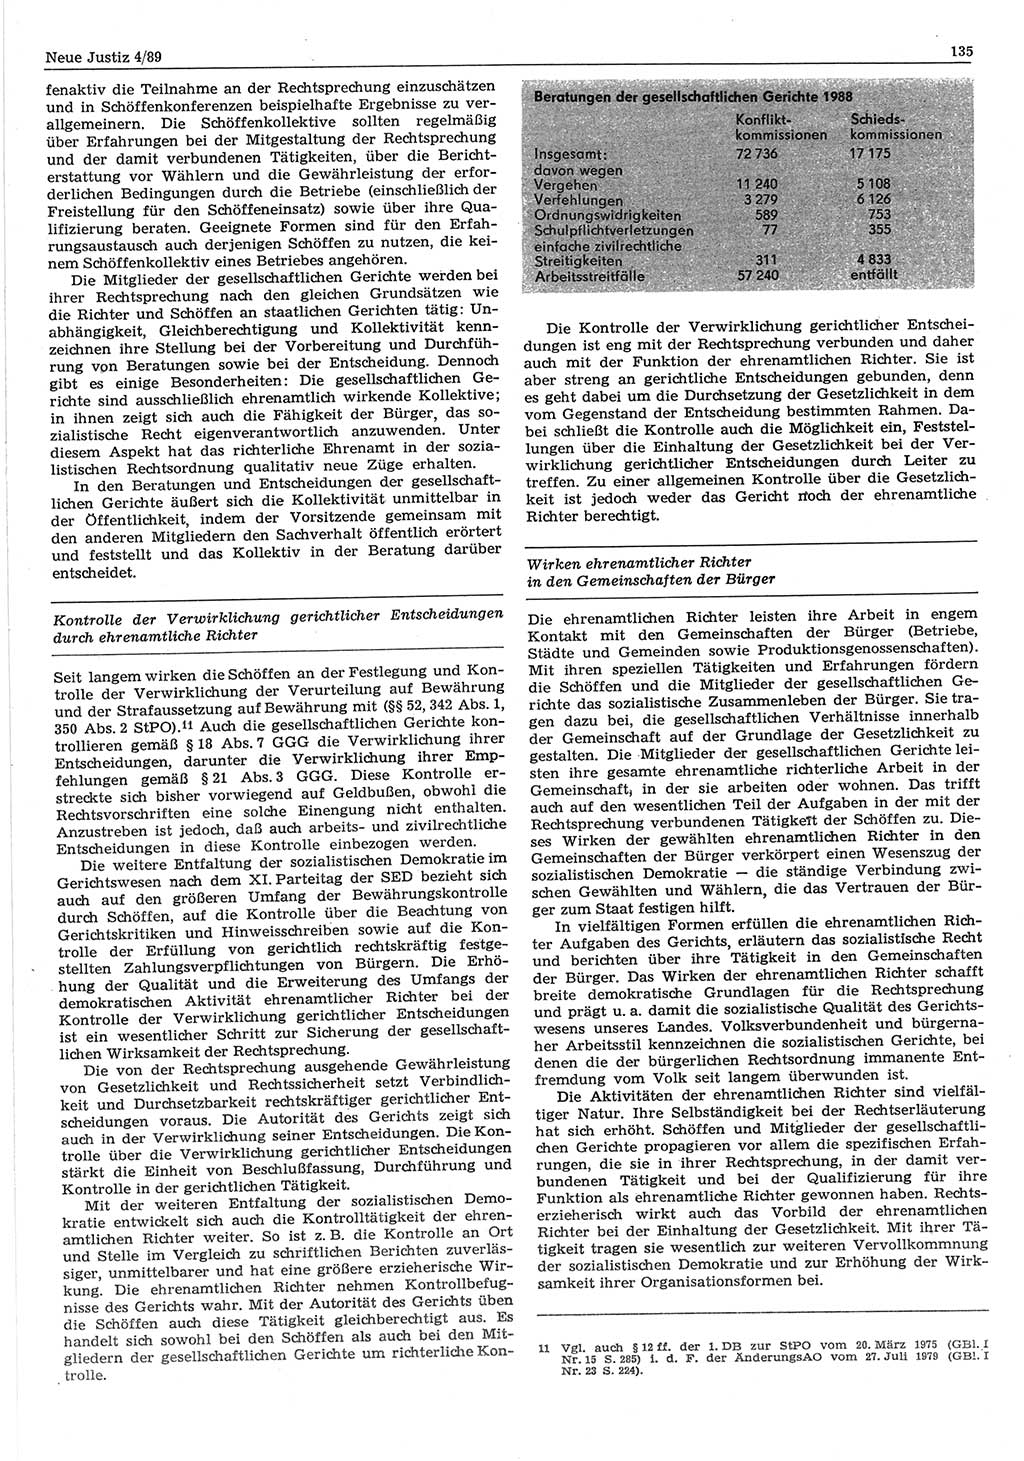 Neue Justiz (NJ), Zeitschrift für sozialistisches Recht und Gesetzlichkeit [Deutsche Demokratische Republik (DDR)], 43. Jahrgang 1989, Seite 135 (NJ DDR 1989, S. 135)